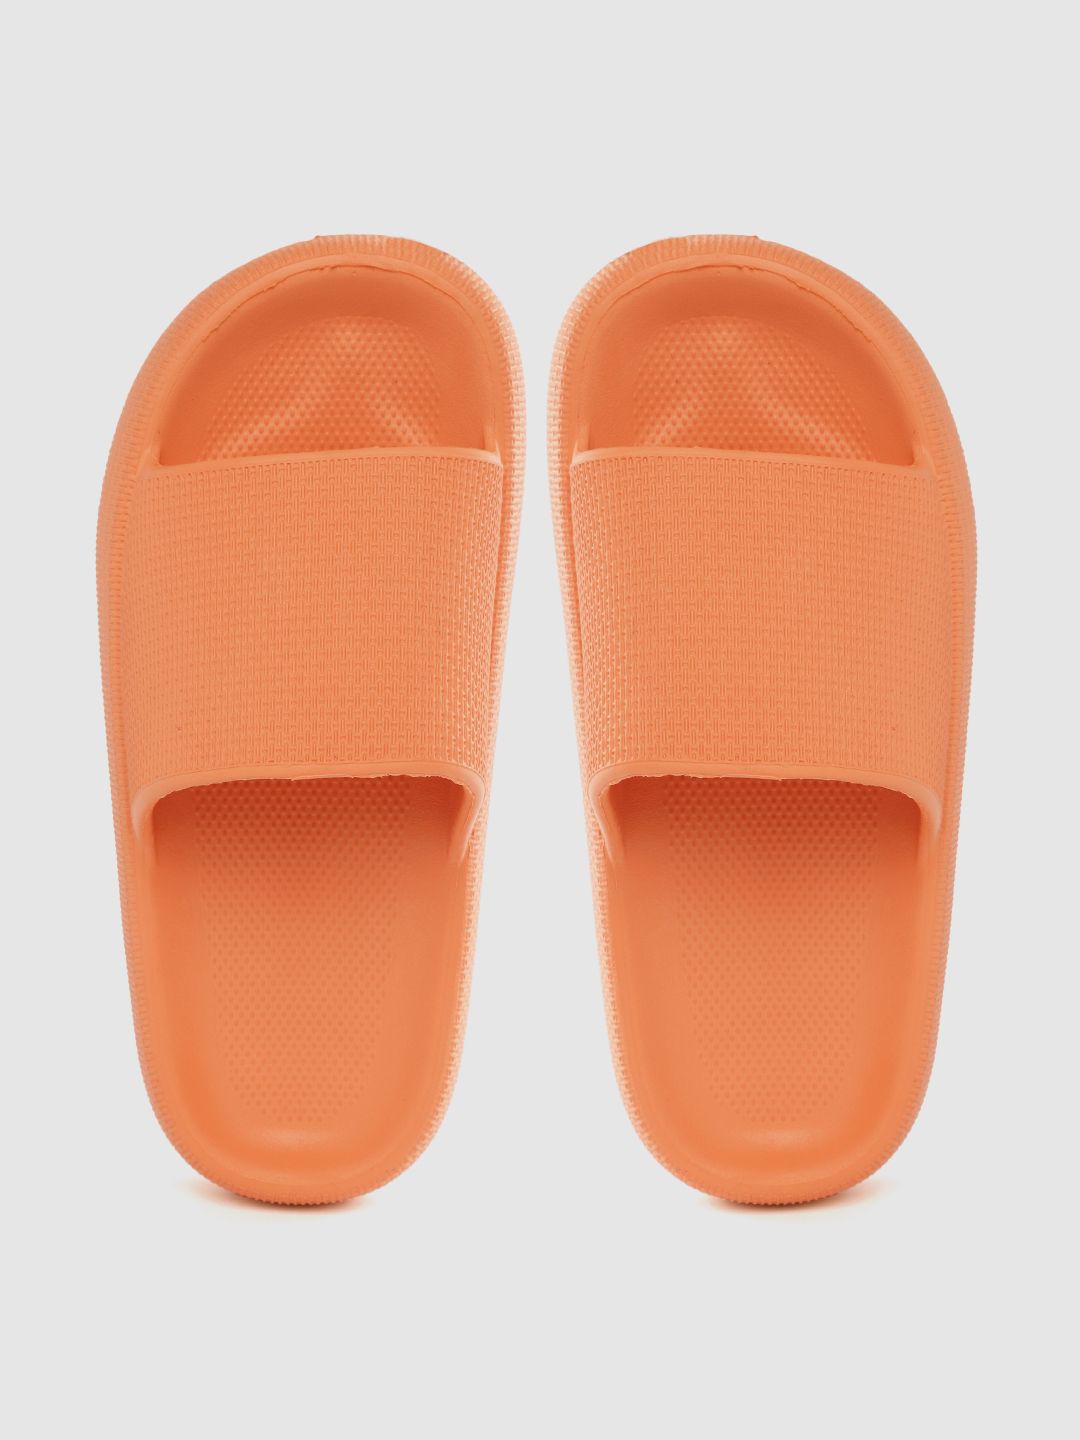 Kook N Keech Women Orange Textured Sliders Price in India